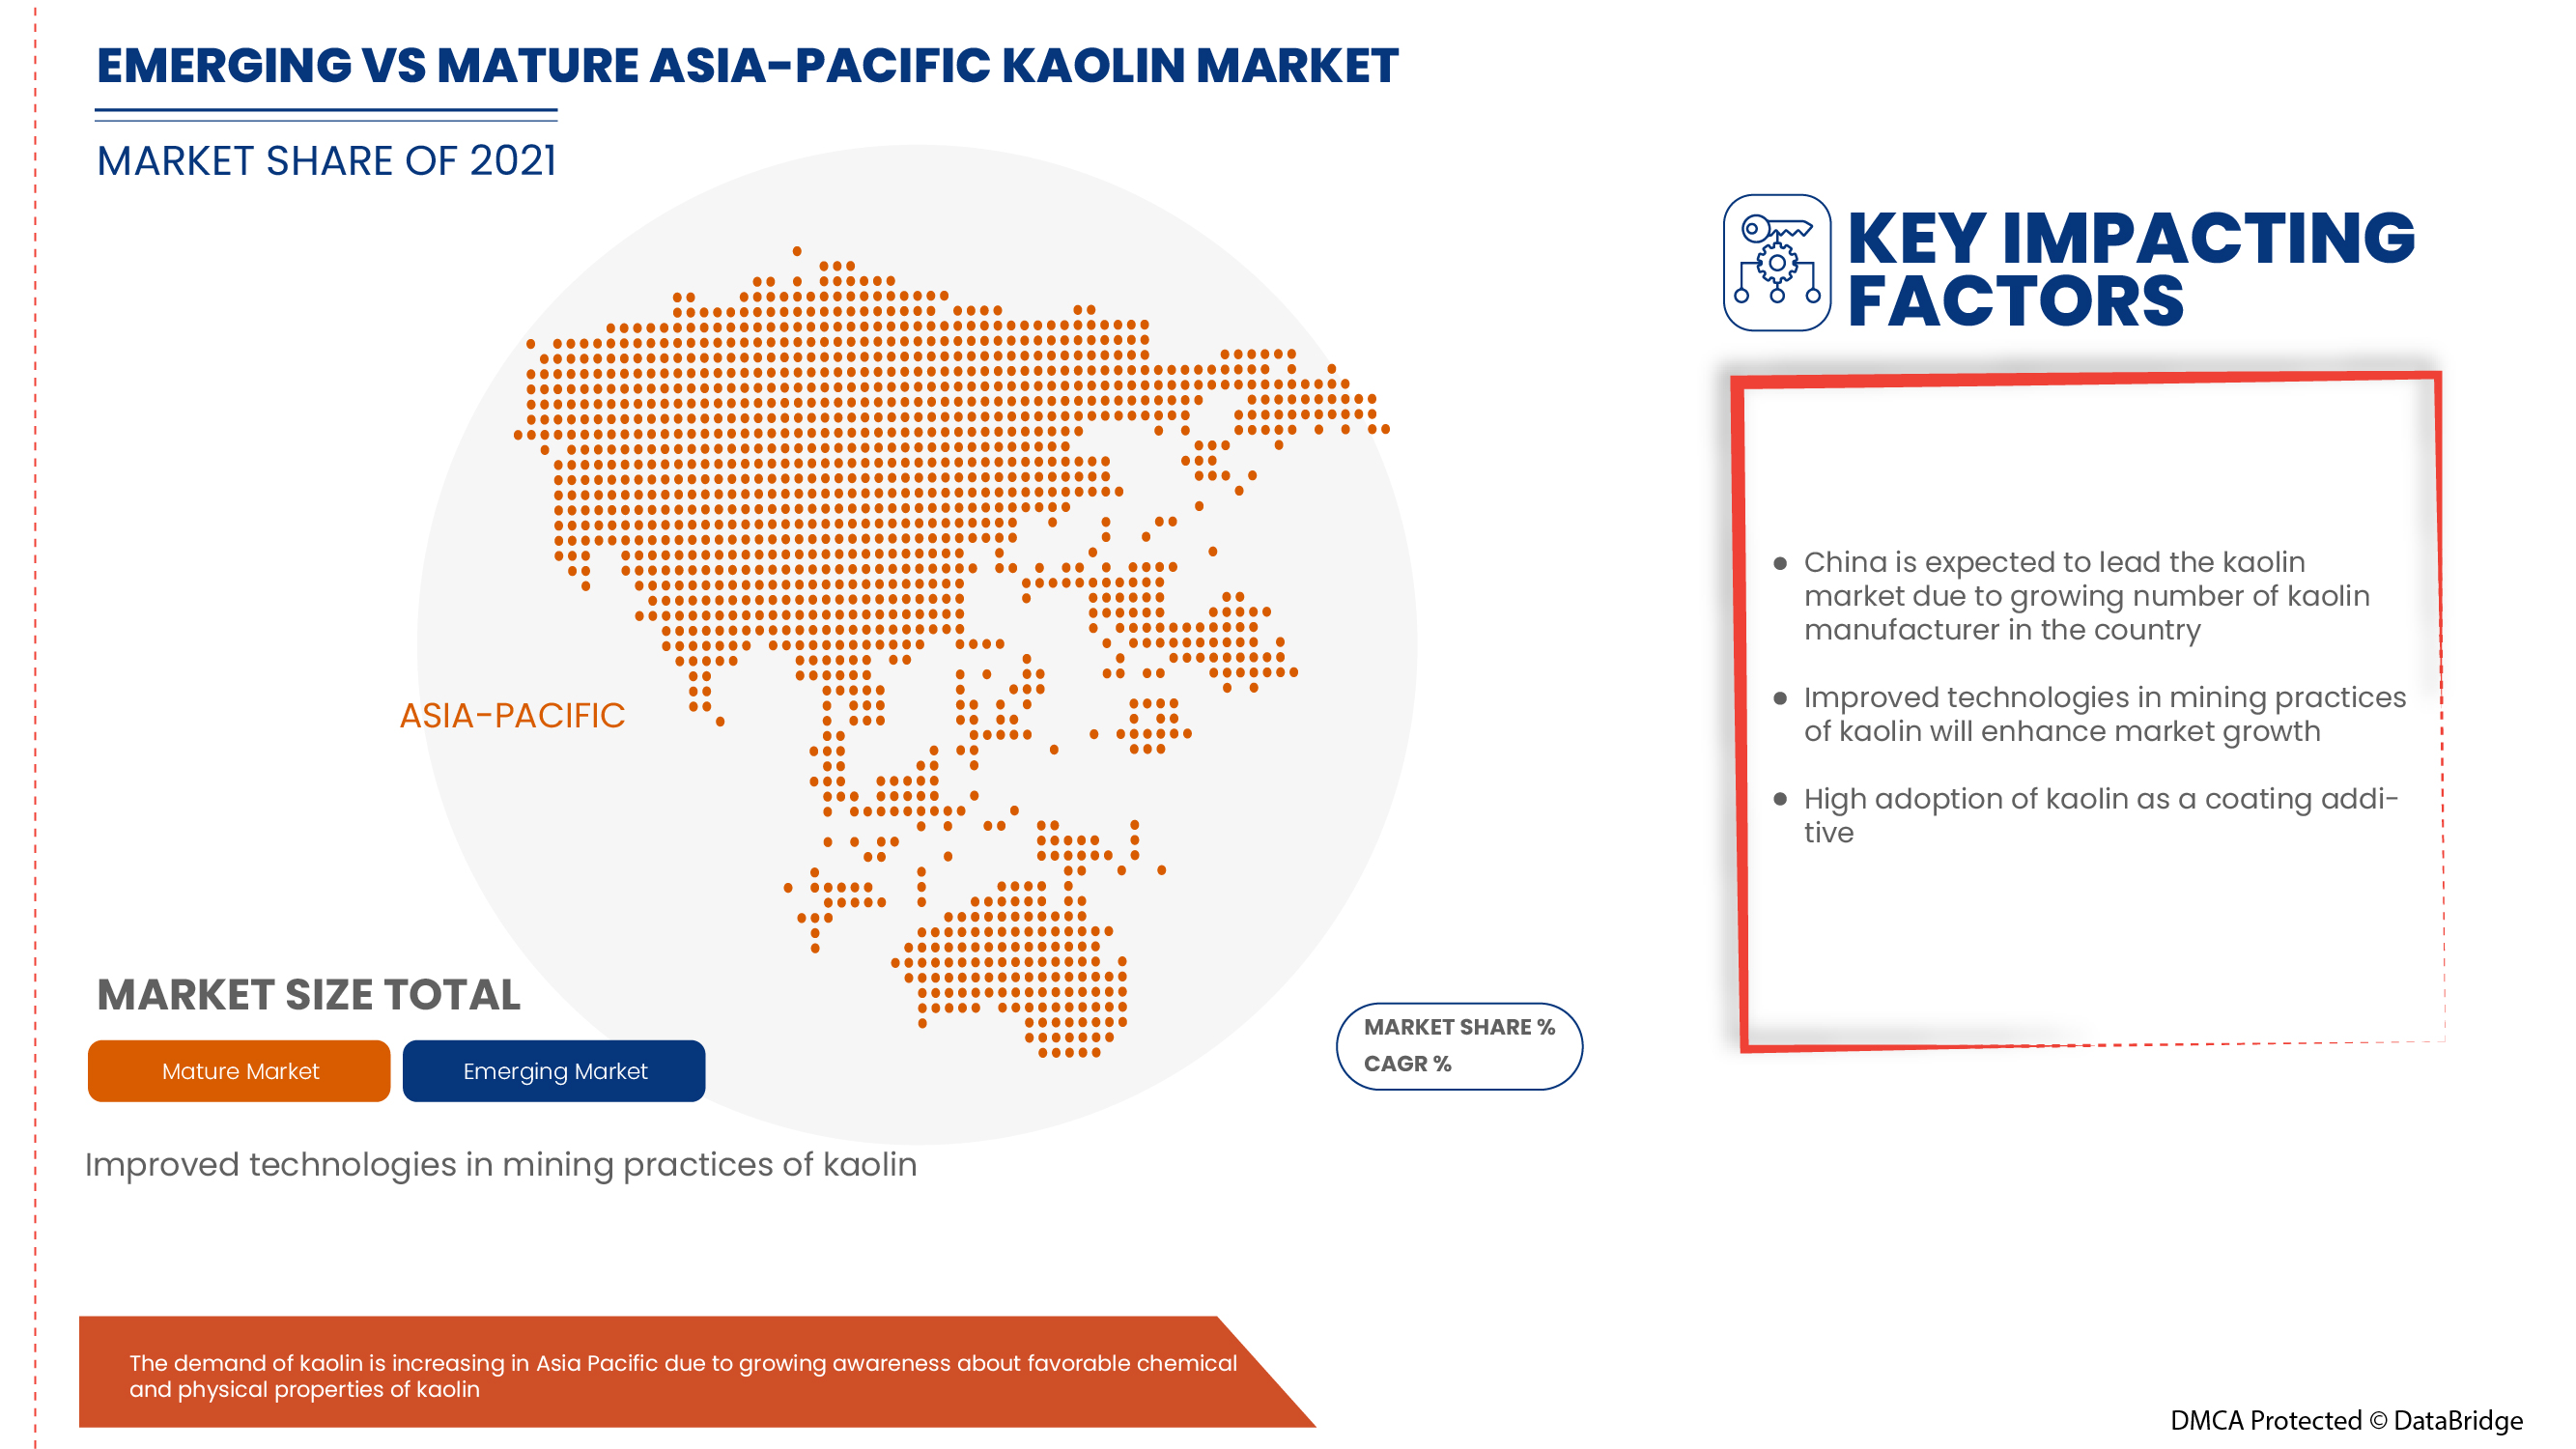 Asia-Pacific Kaolin Market